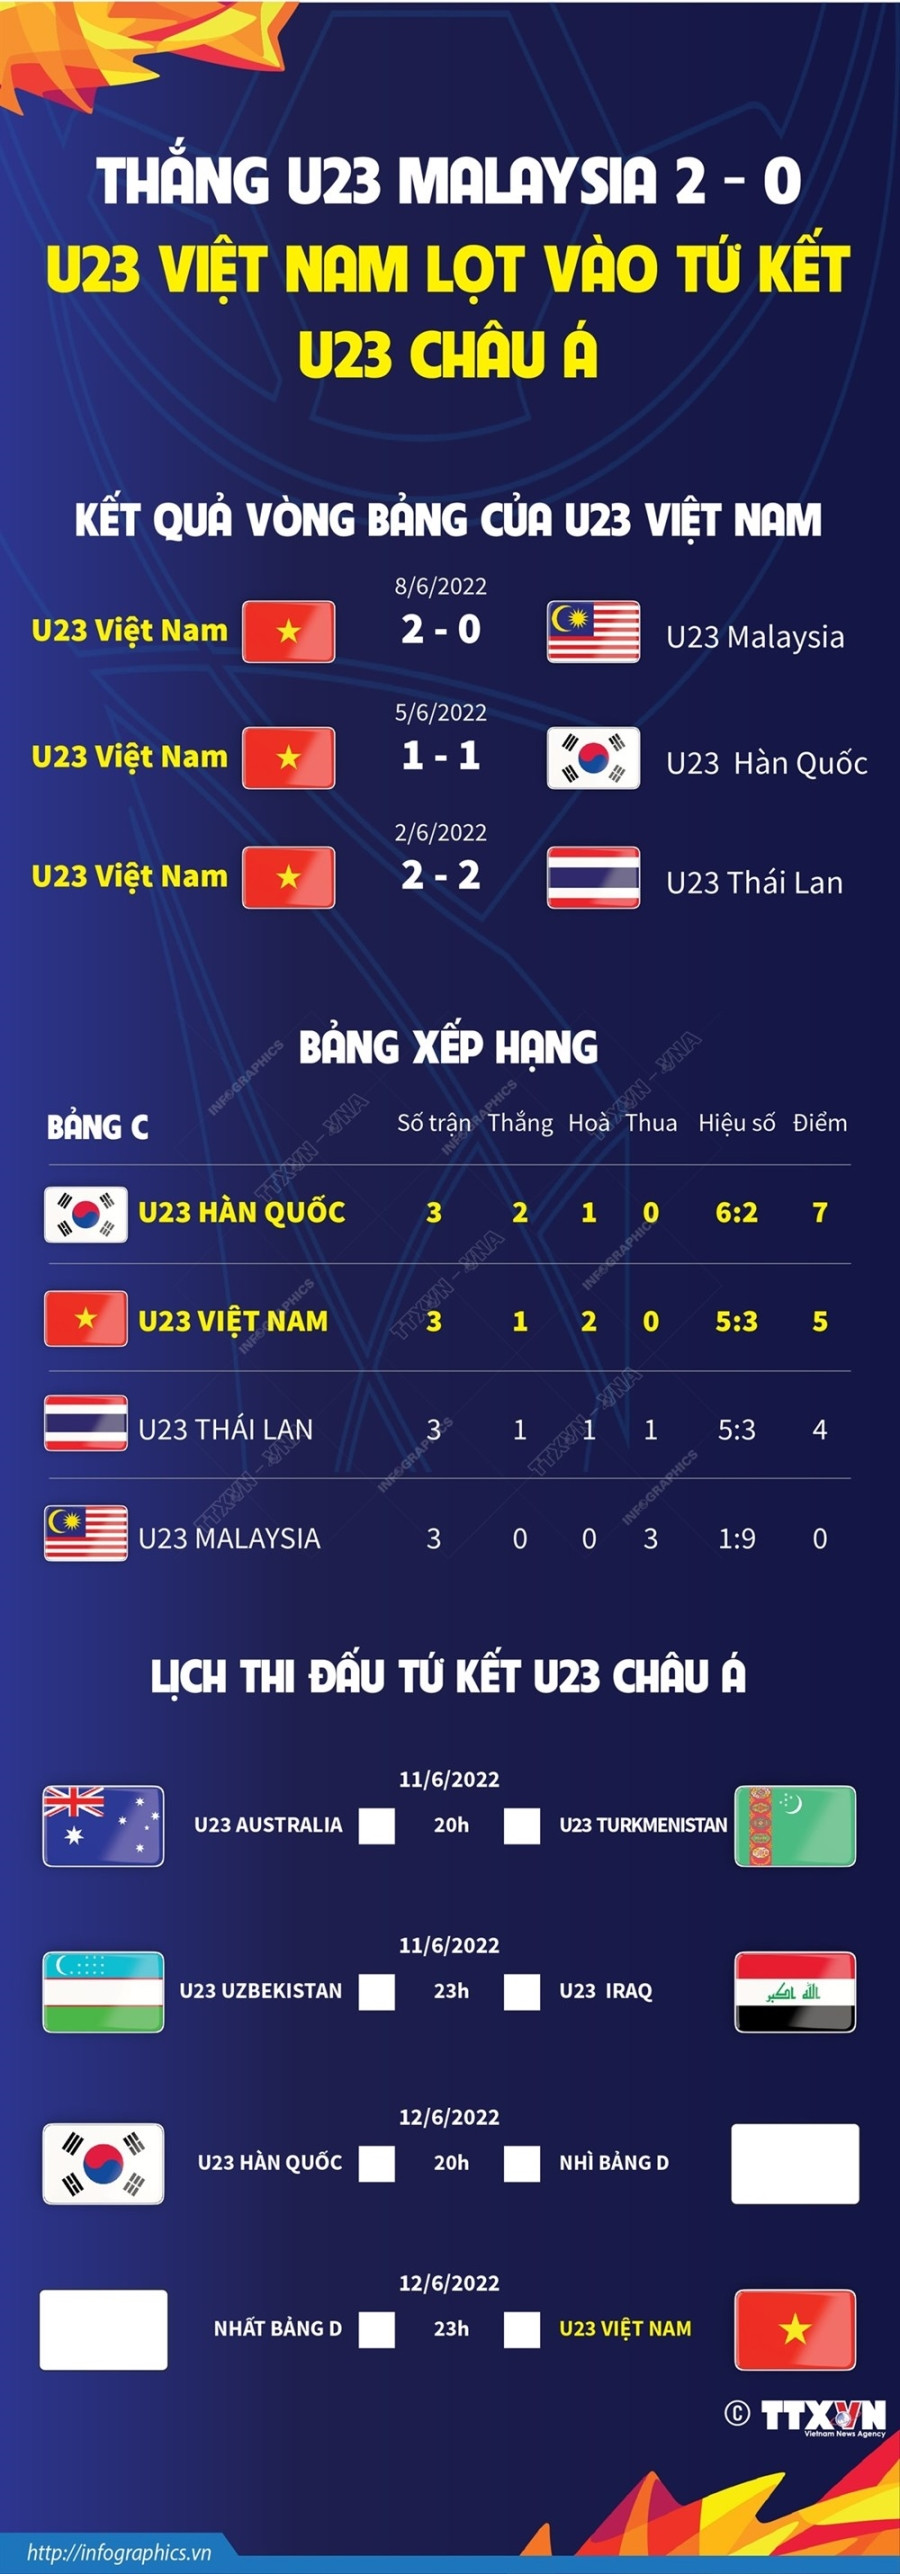 U23 Viet Nam nhan thuong hon 1 ty dong sau khi vao tu ket U23 chau A hinh anh 2